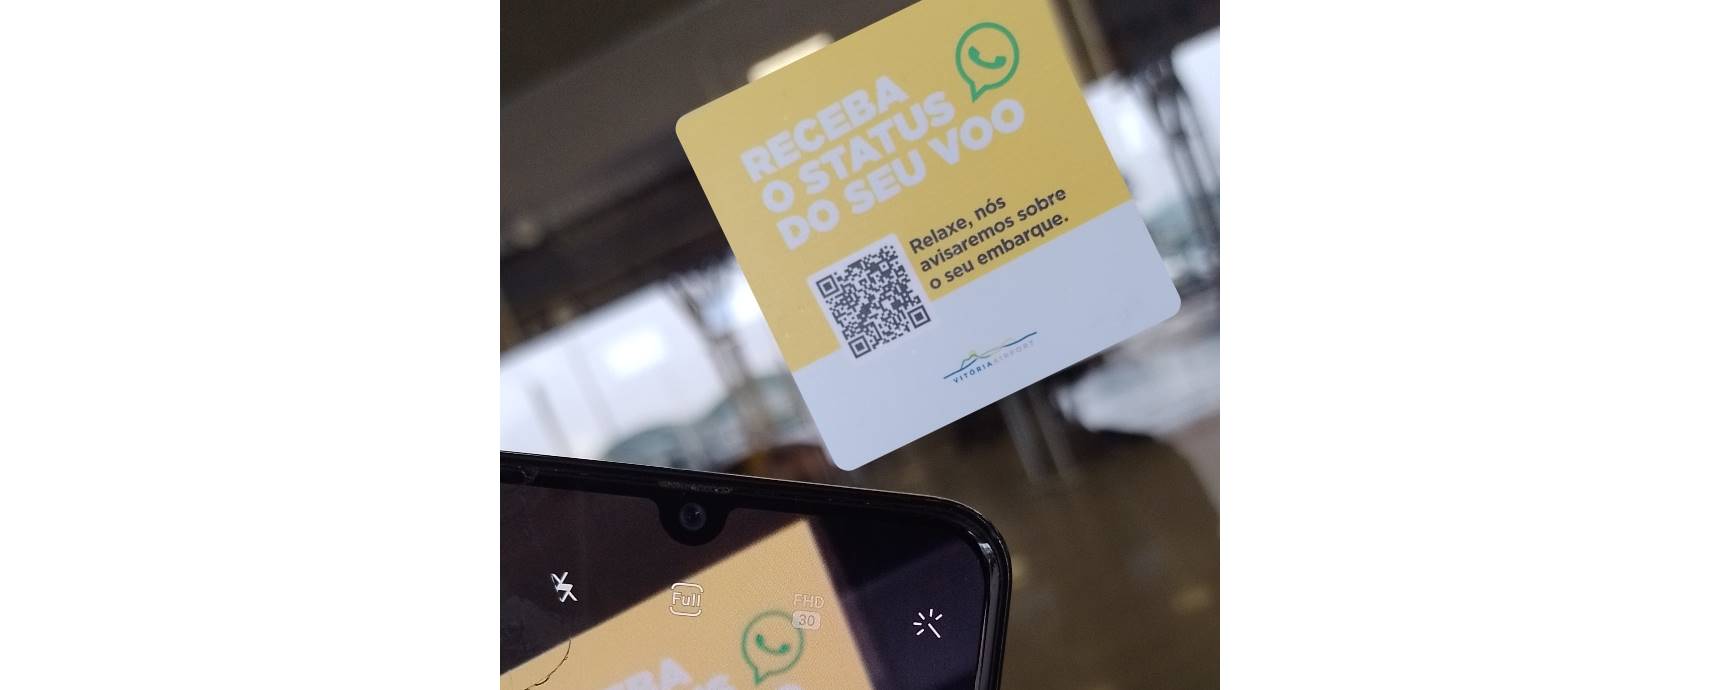 Passageiros podem receber status de seu voo pelo WhatsApp